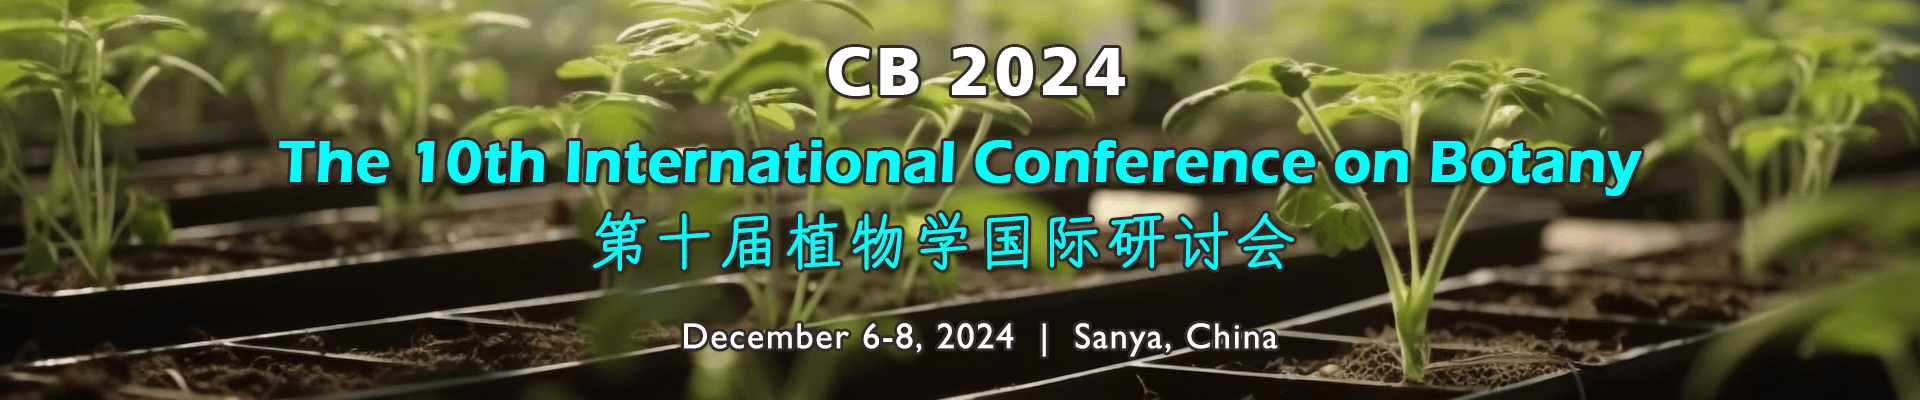 第十届植物学国际研讨会(CB 2024)